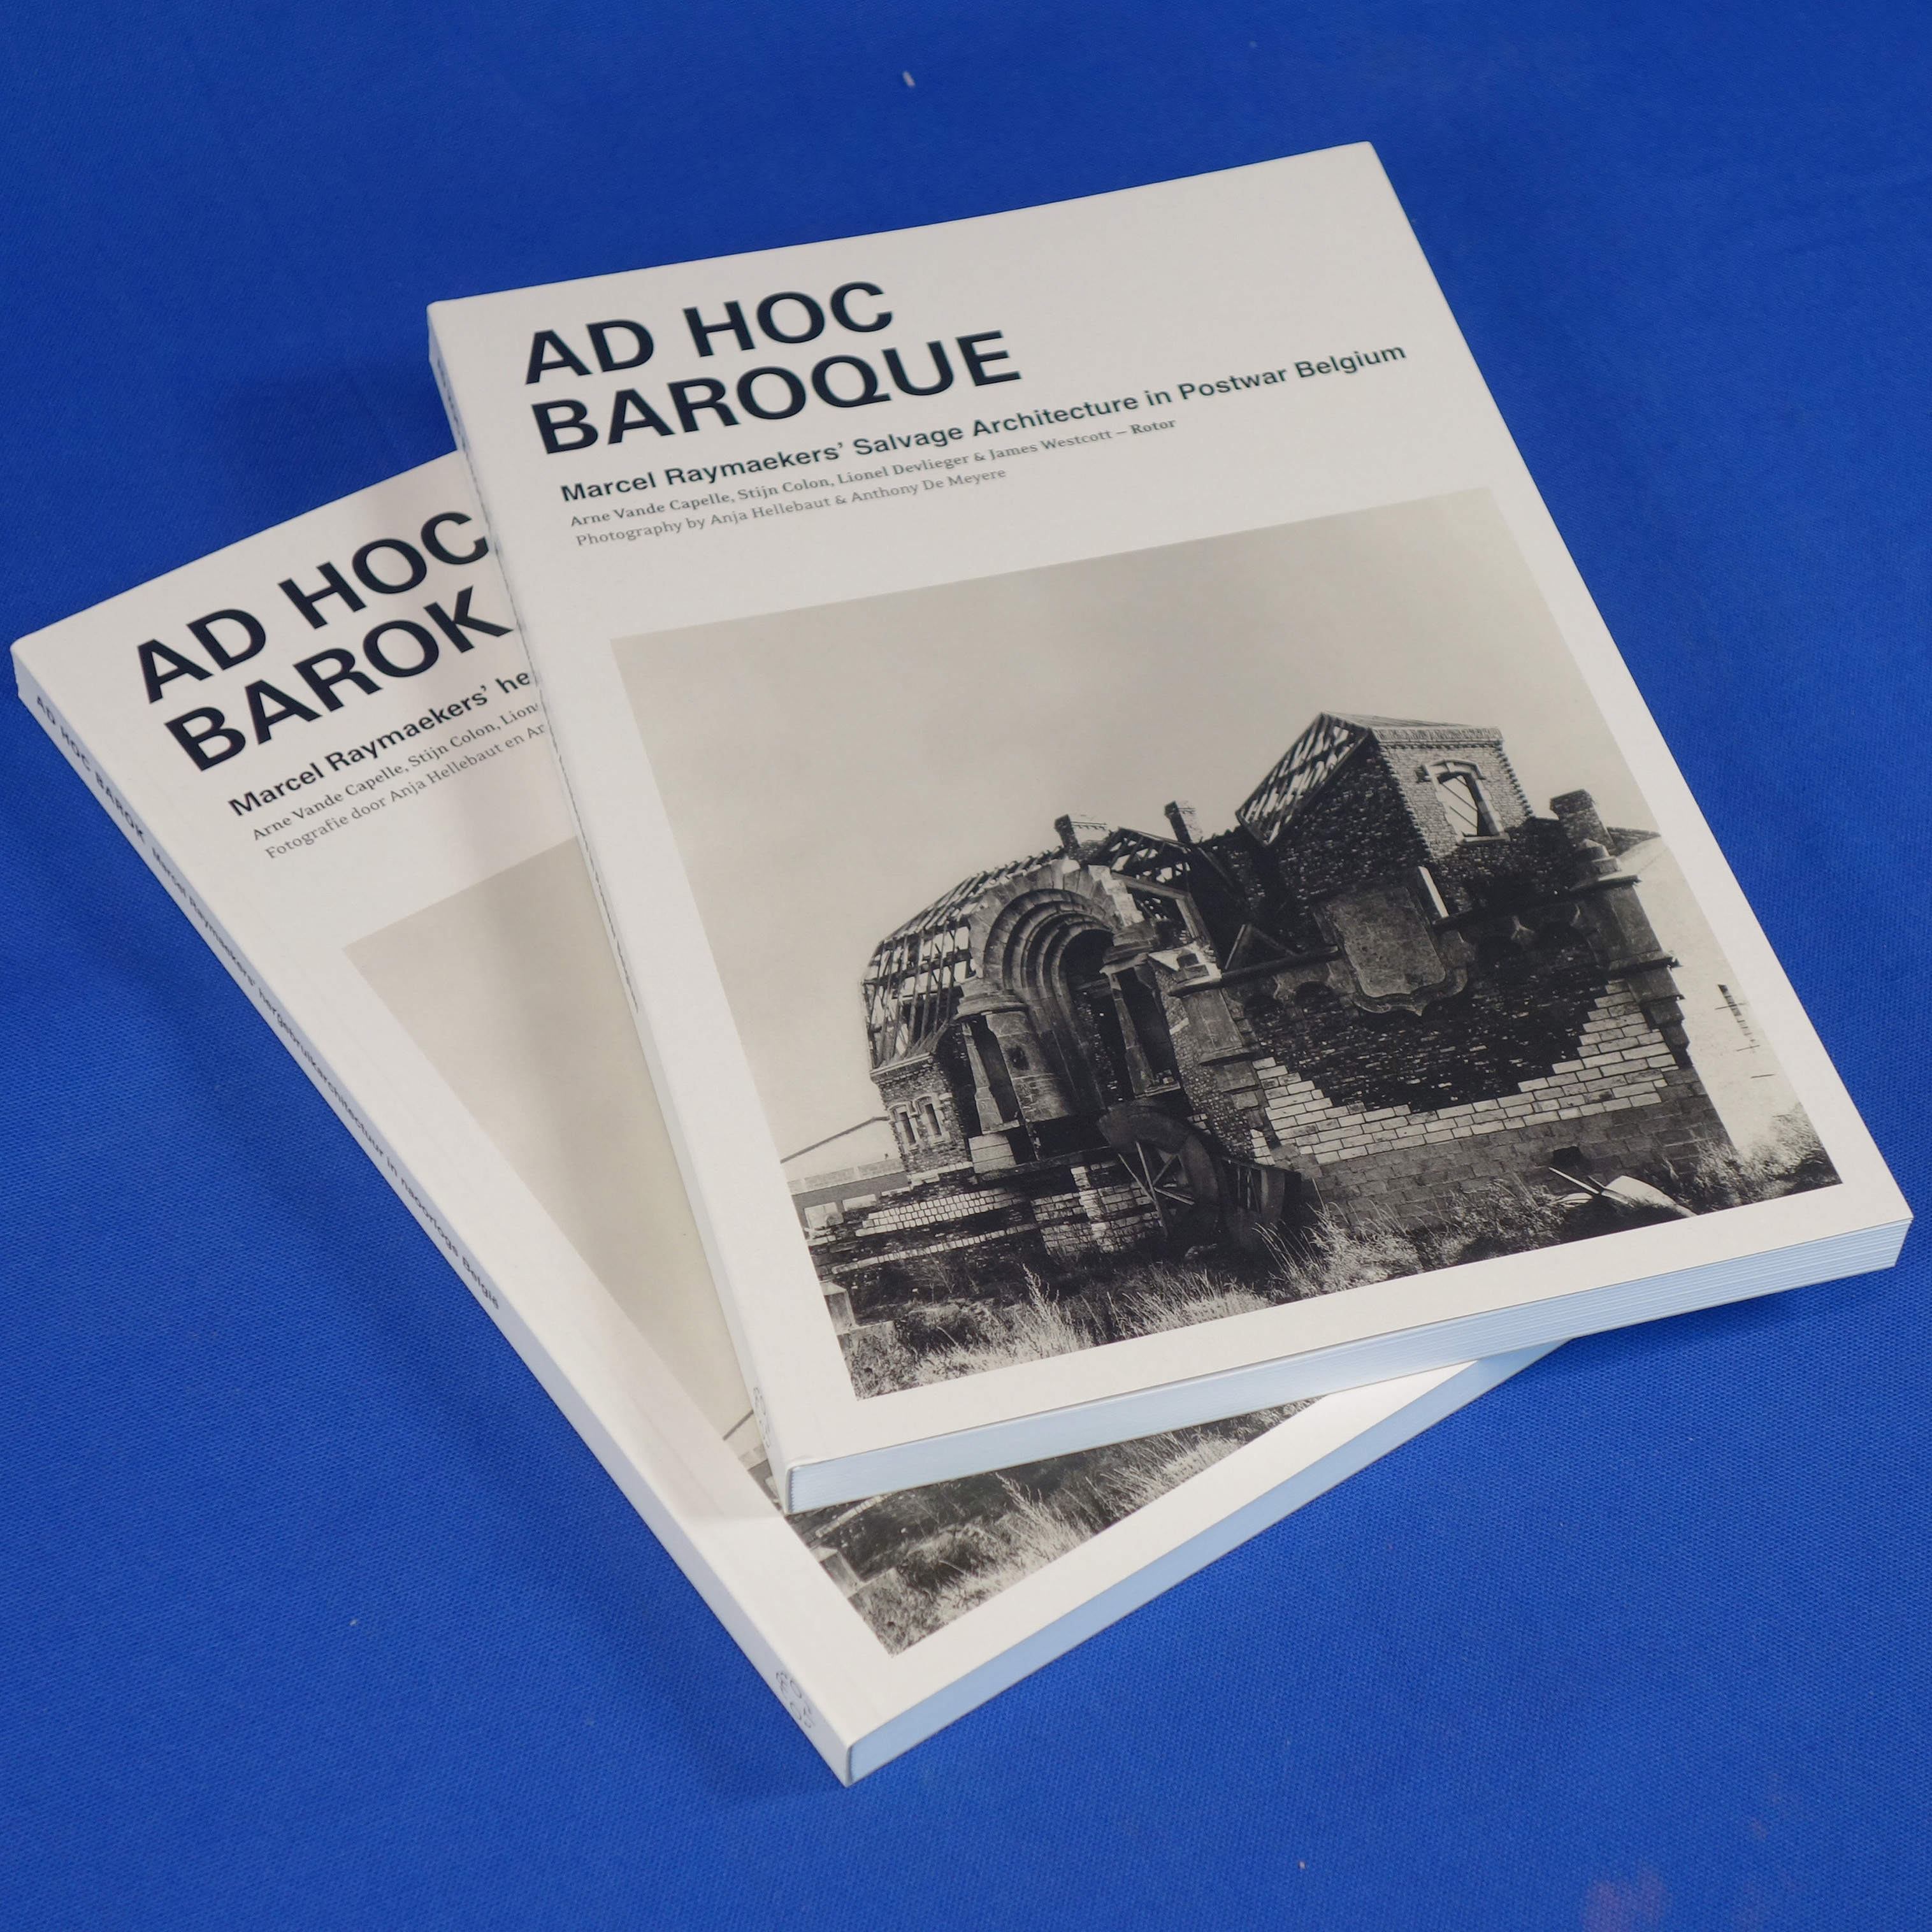 Book ‘Ad Hoc Baroque’ by A. Vande Capelle, S. Colon, L. Devlieger &amp; J. Westcott